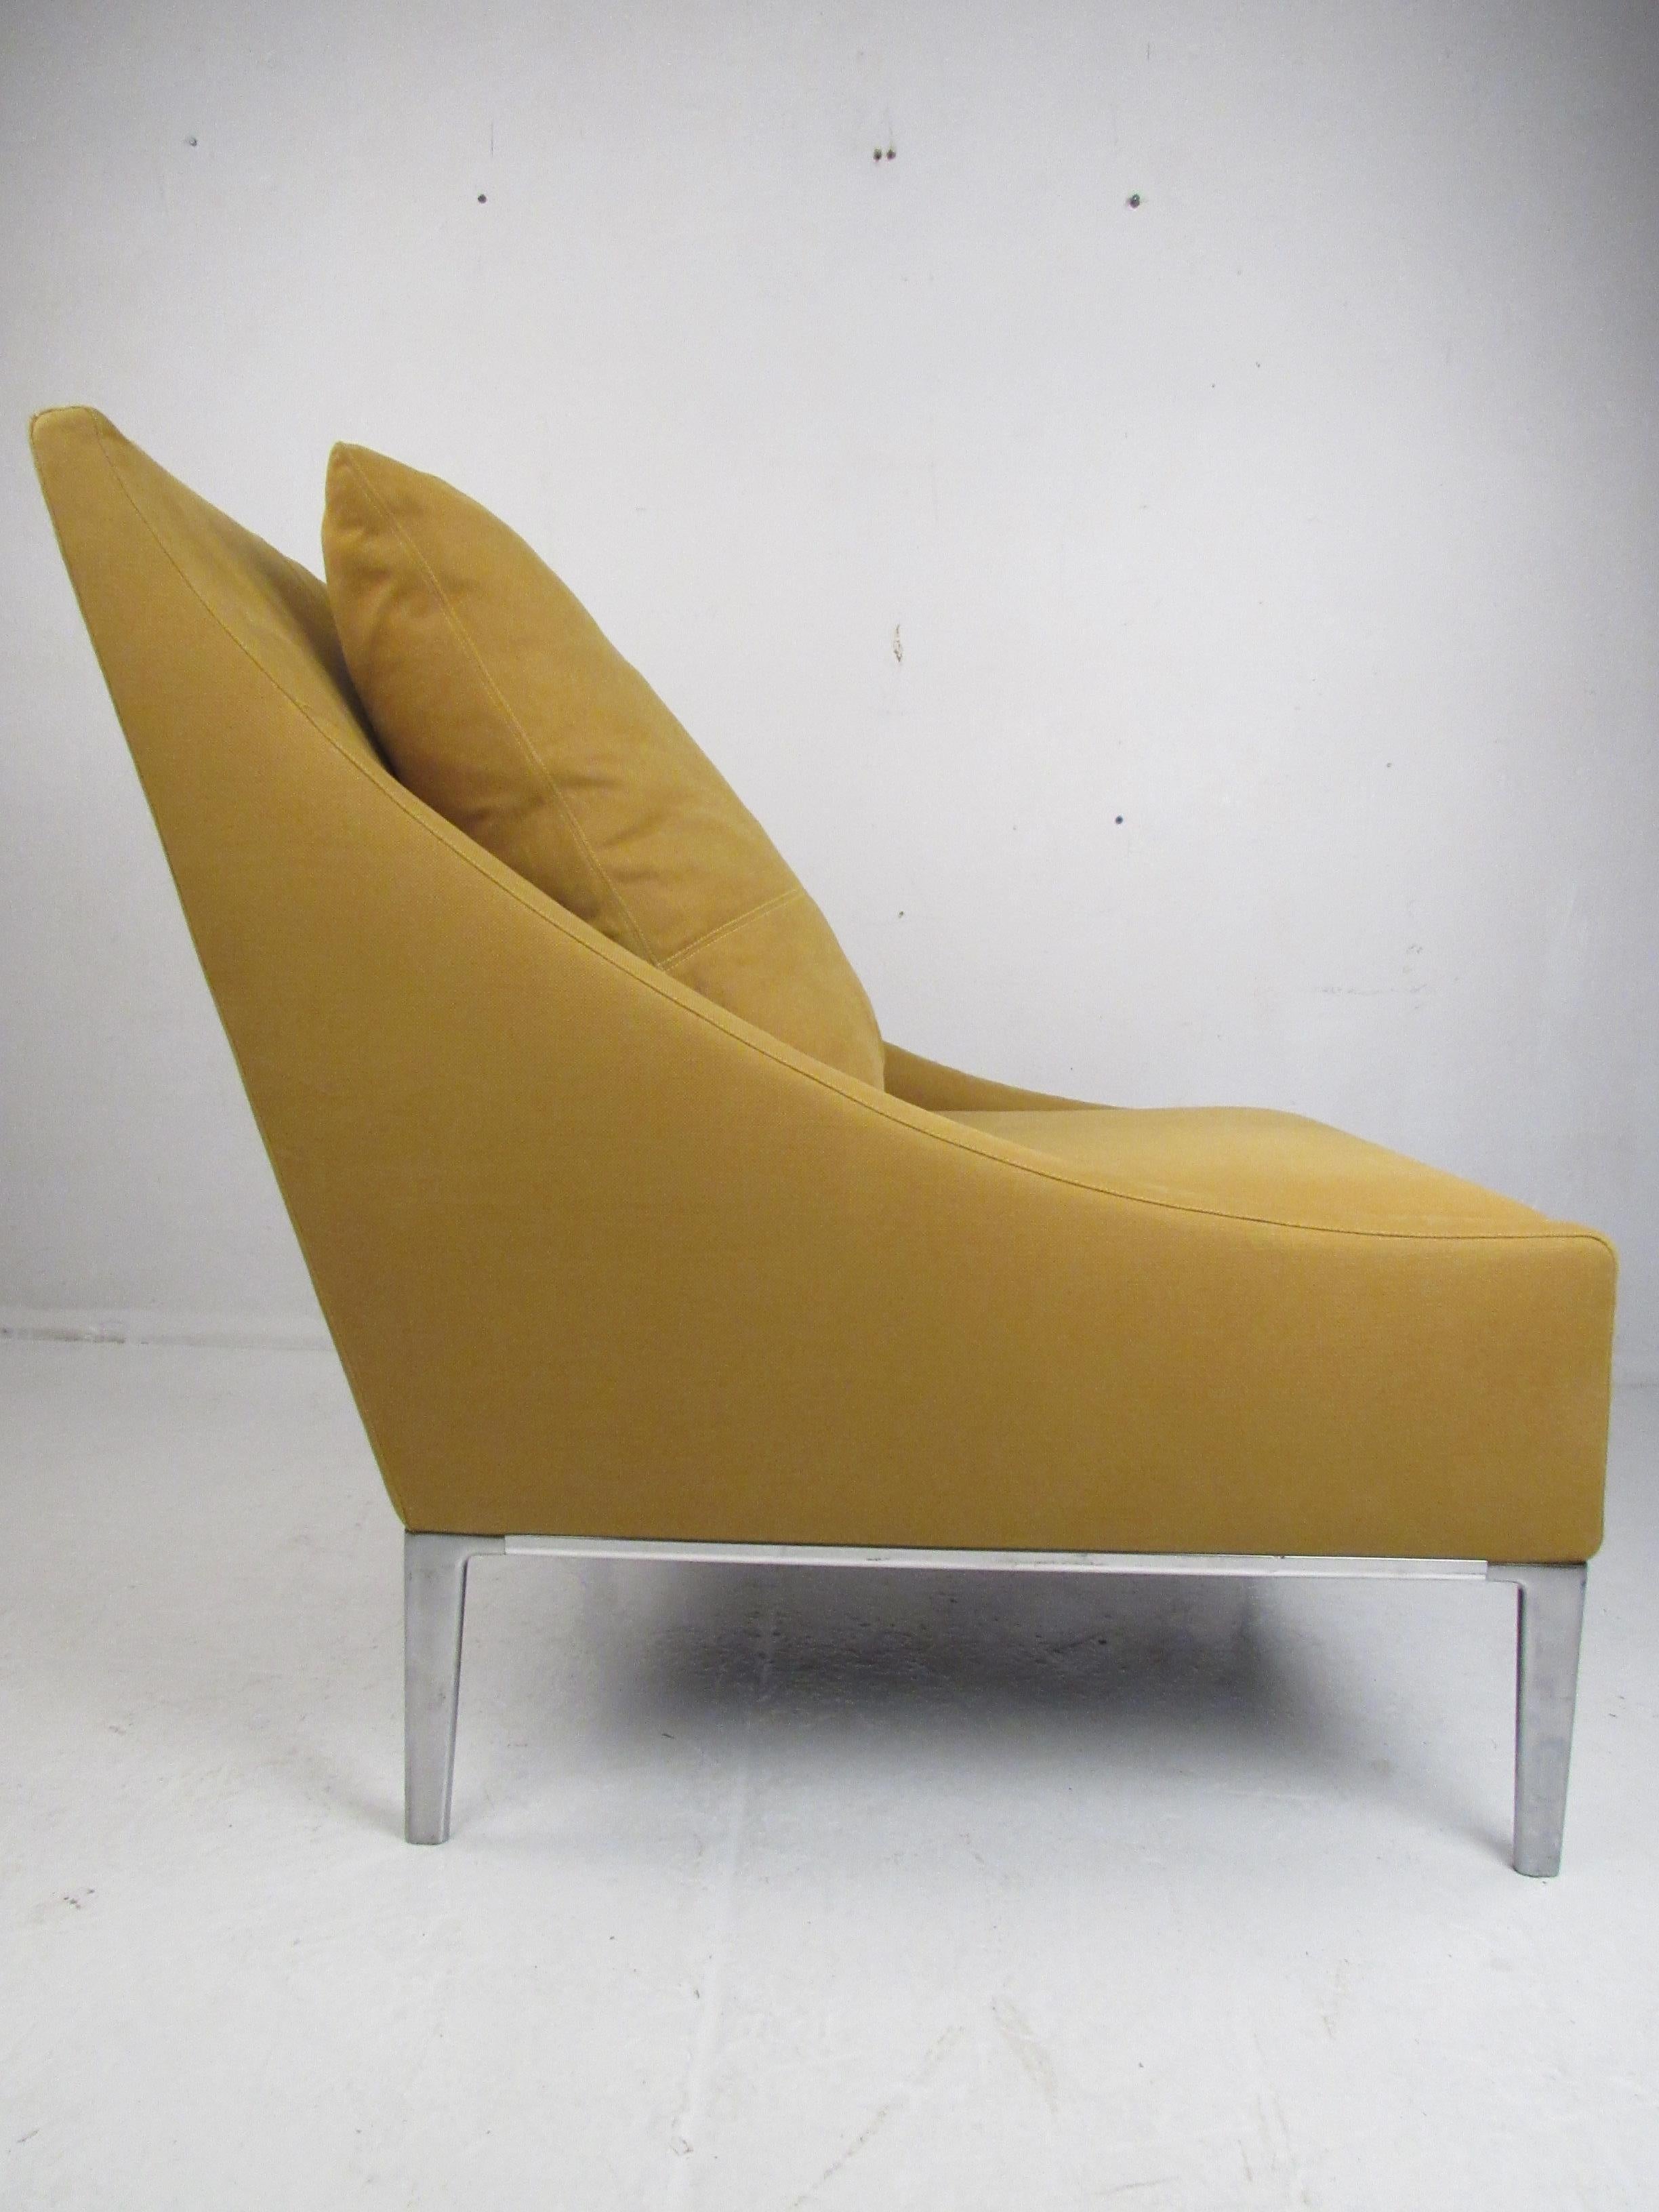 Cette luxueuse chaise longue moderne et contemporaine a été conçue par Antonio Citterio pour B&B Italia. Un design italien inhabituel qui se caractérise par des accoudoirs extrêmement bas et inclinés et une base chromée avec des pieds effilés. Un